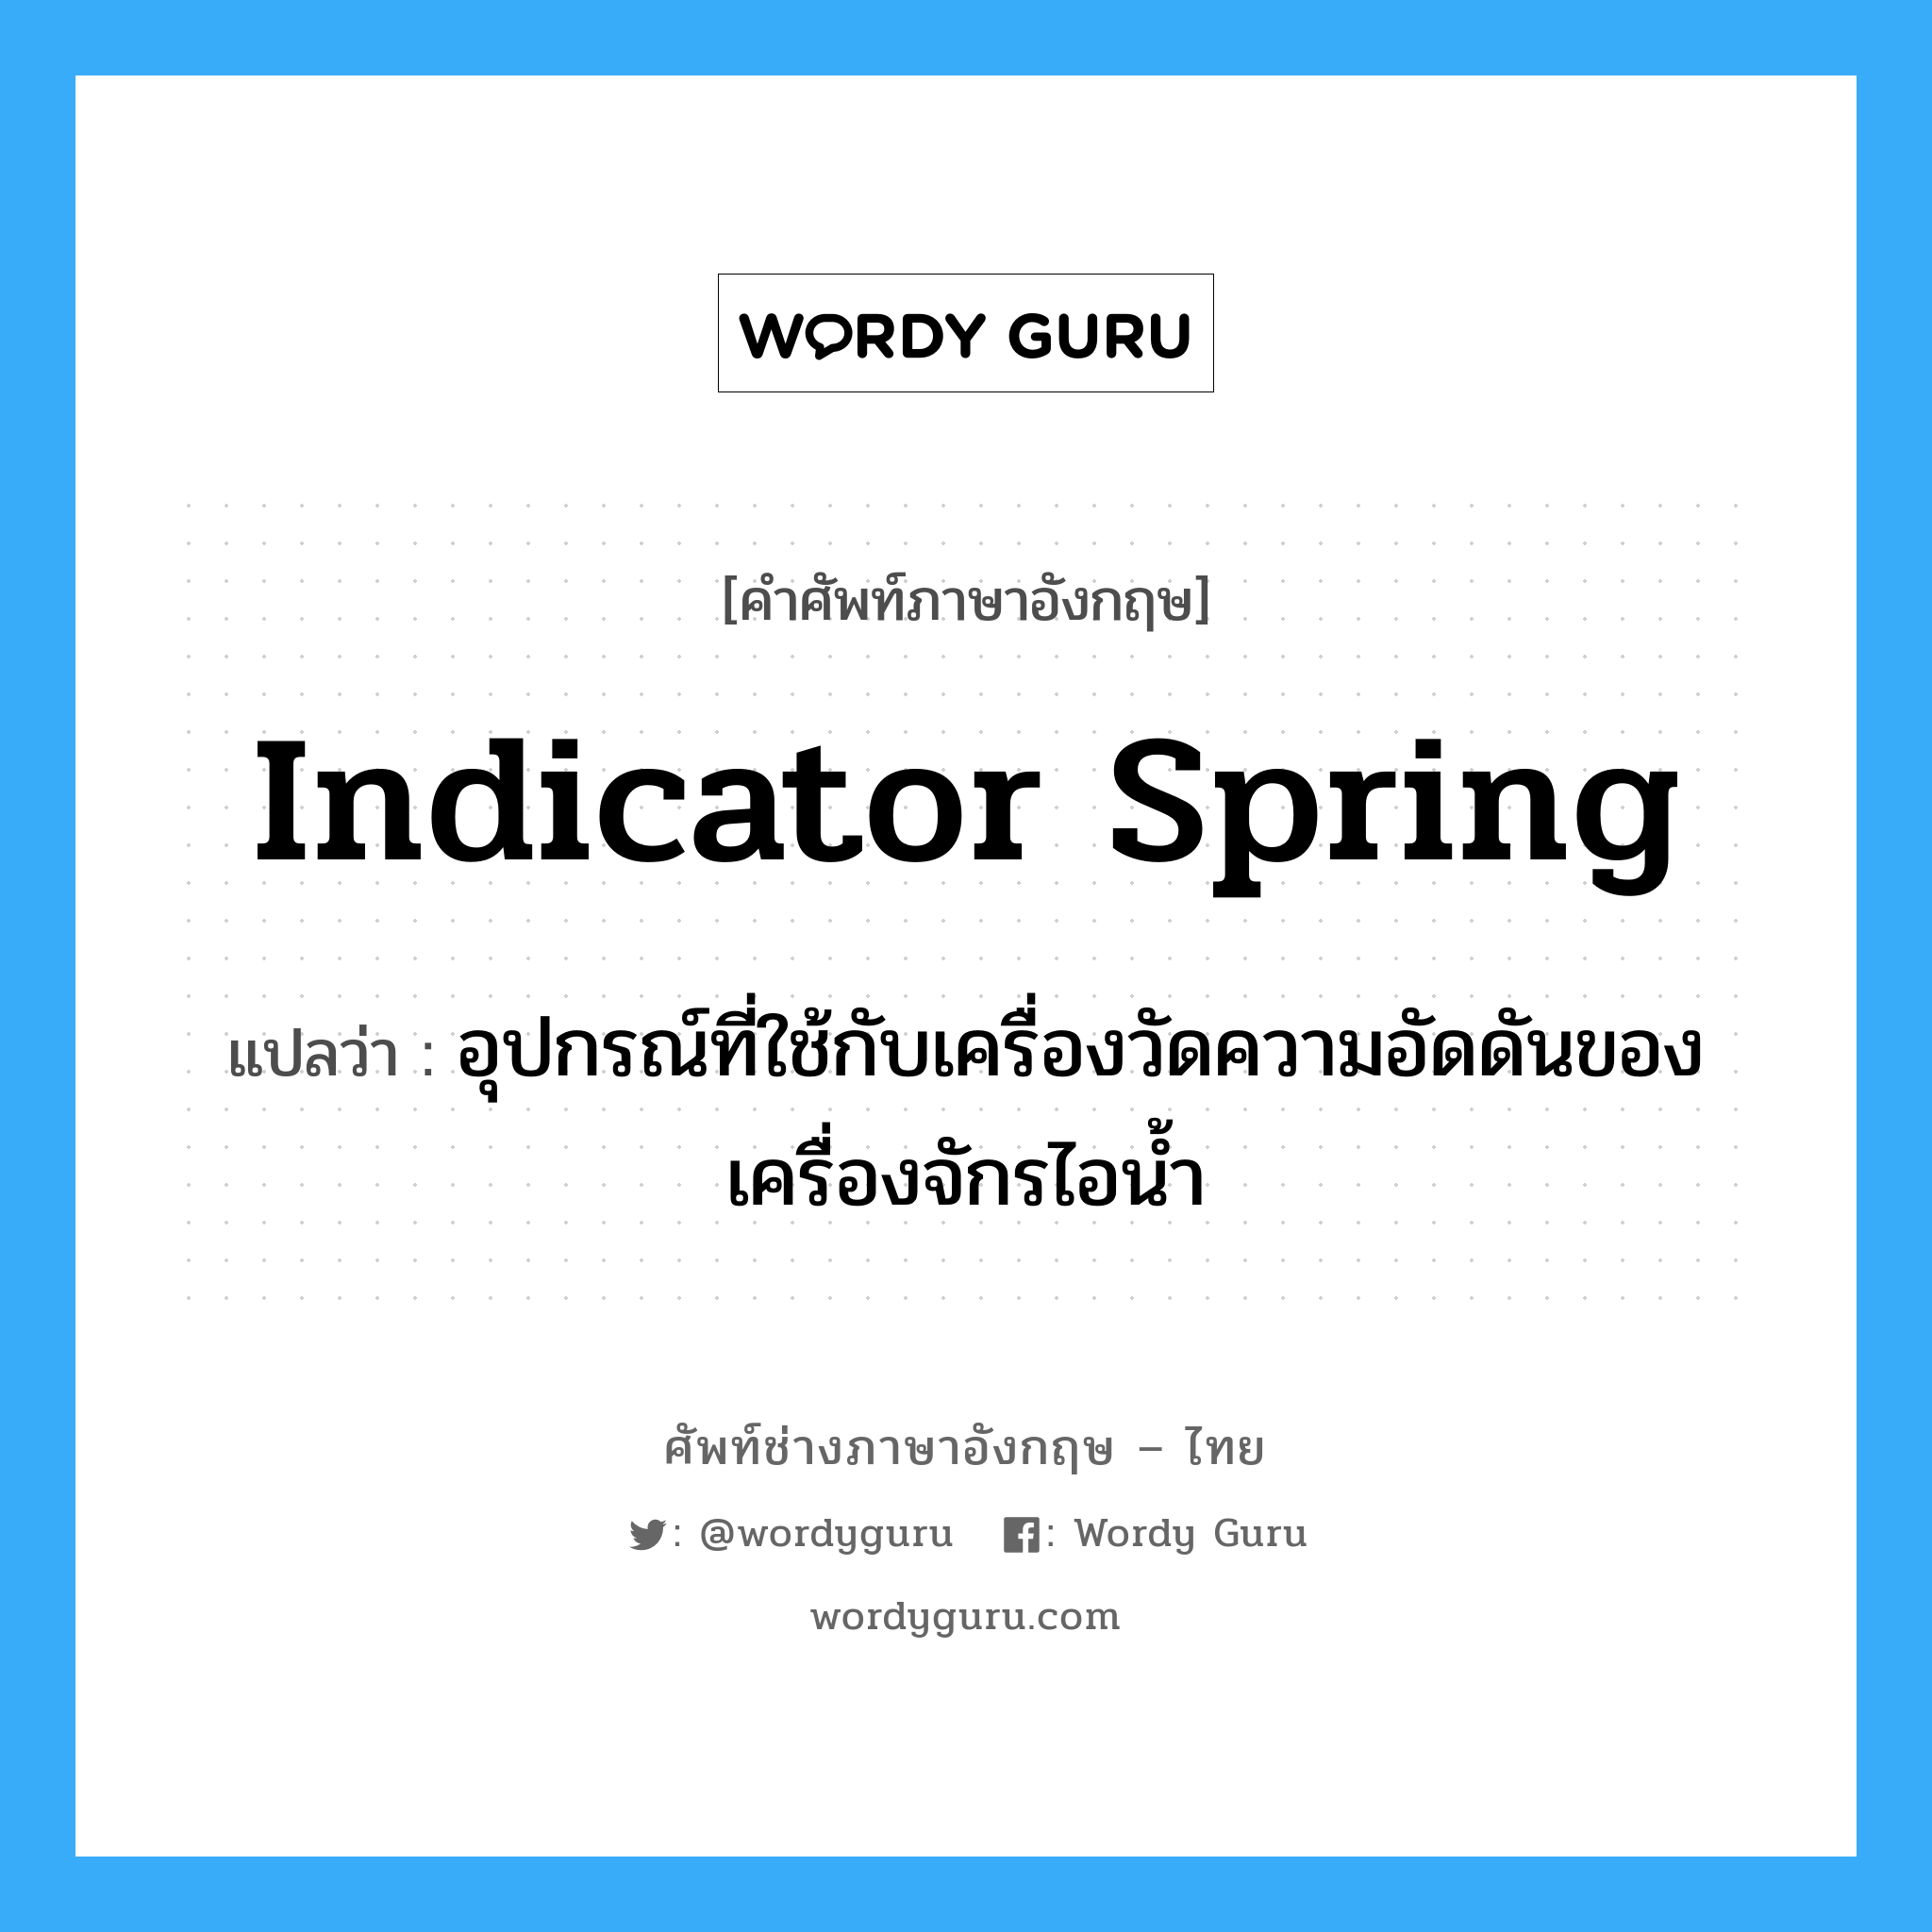 indicator spring แปลว่า?, คำศัพท์ช่างภาษาอังกฤษ - ไทย indicator spring คำศัพท์ภาษาอังกฤษ indicator spring แปลว่า อุปกรณ์ที่ใช้กับเครื่องวัดความอัดดันของเครื่องจักรไอน้ำ